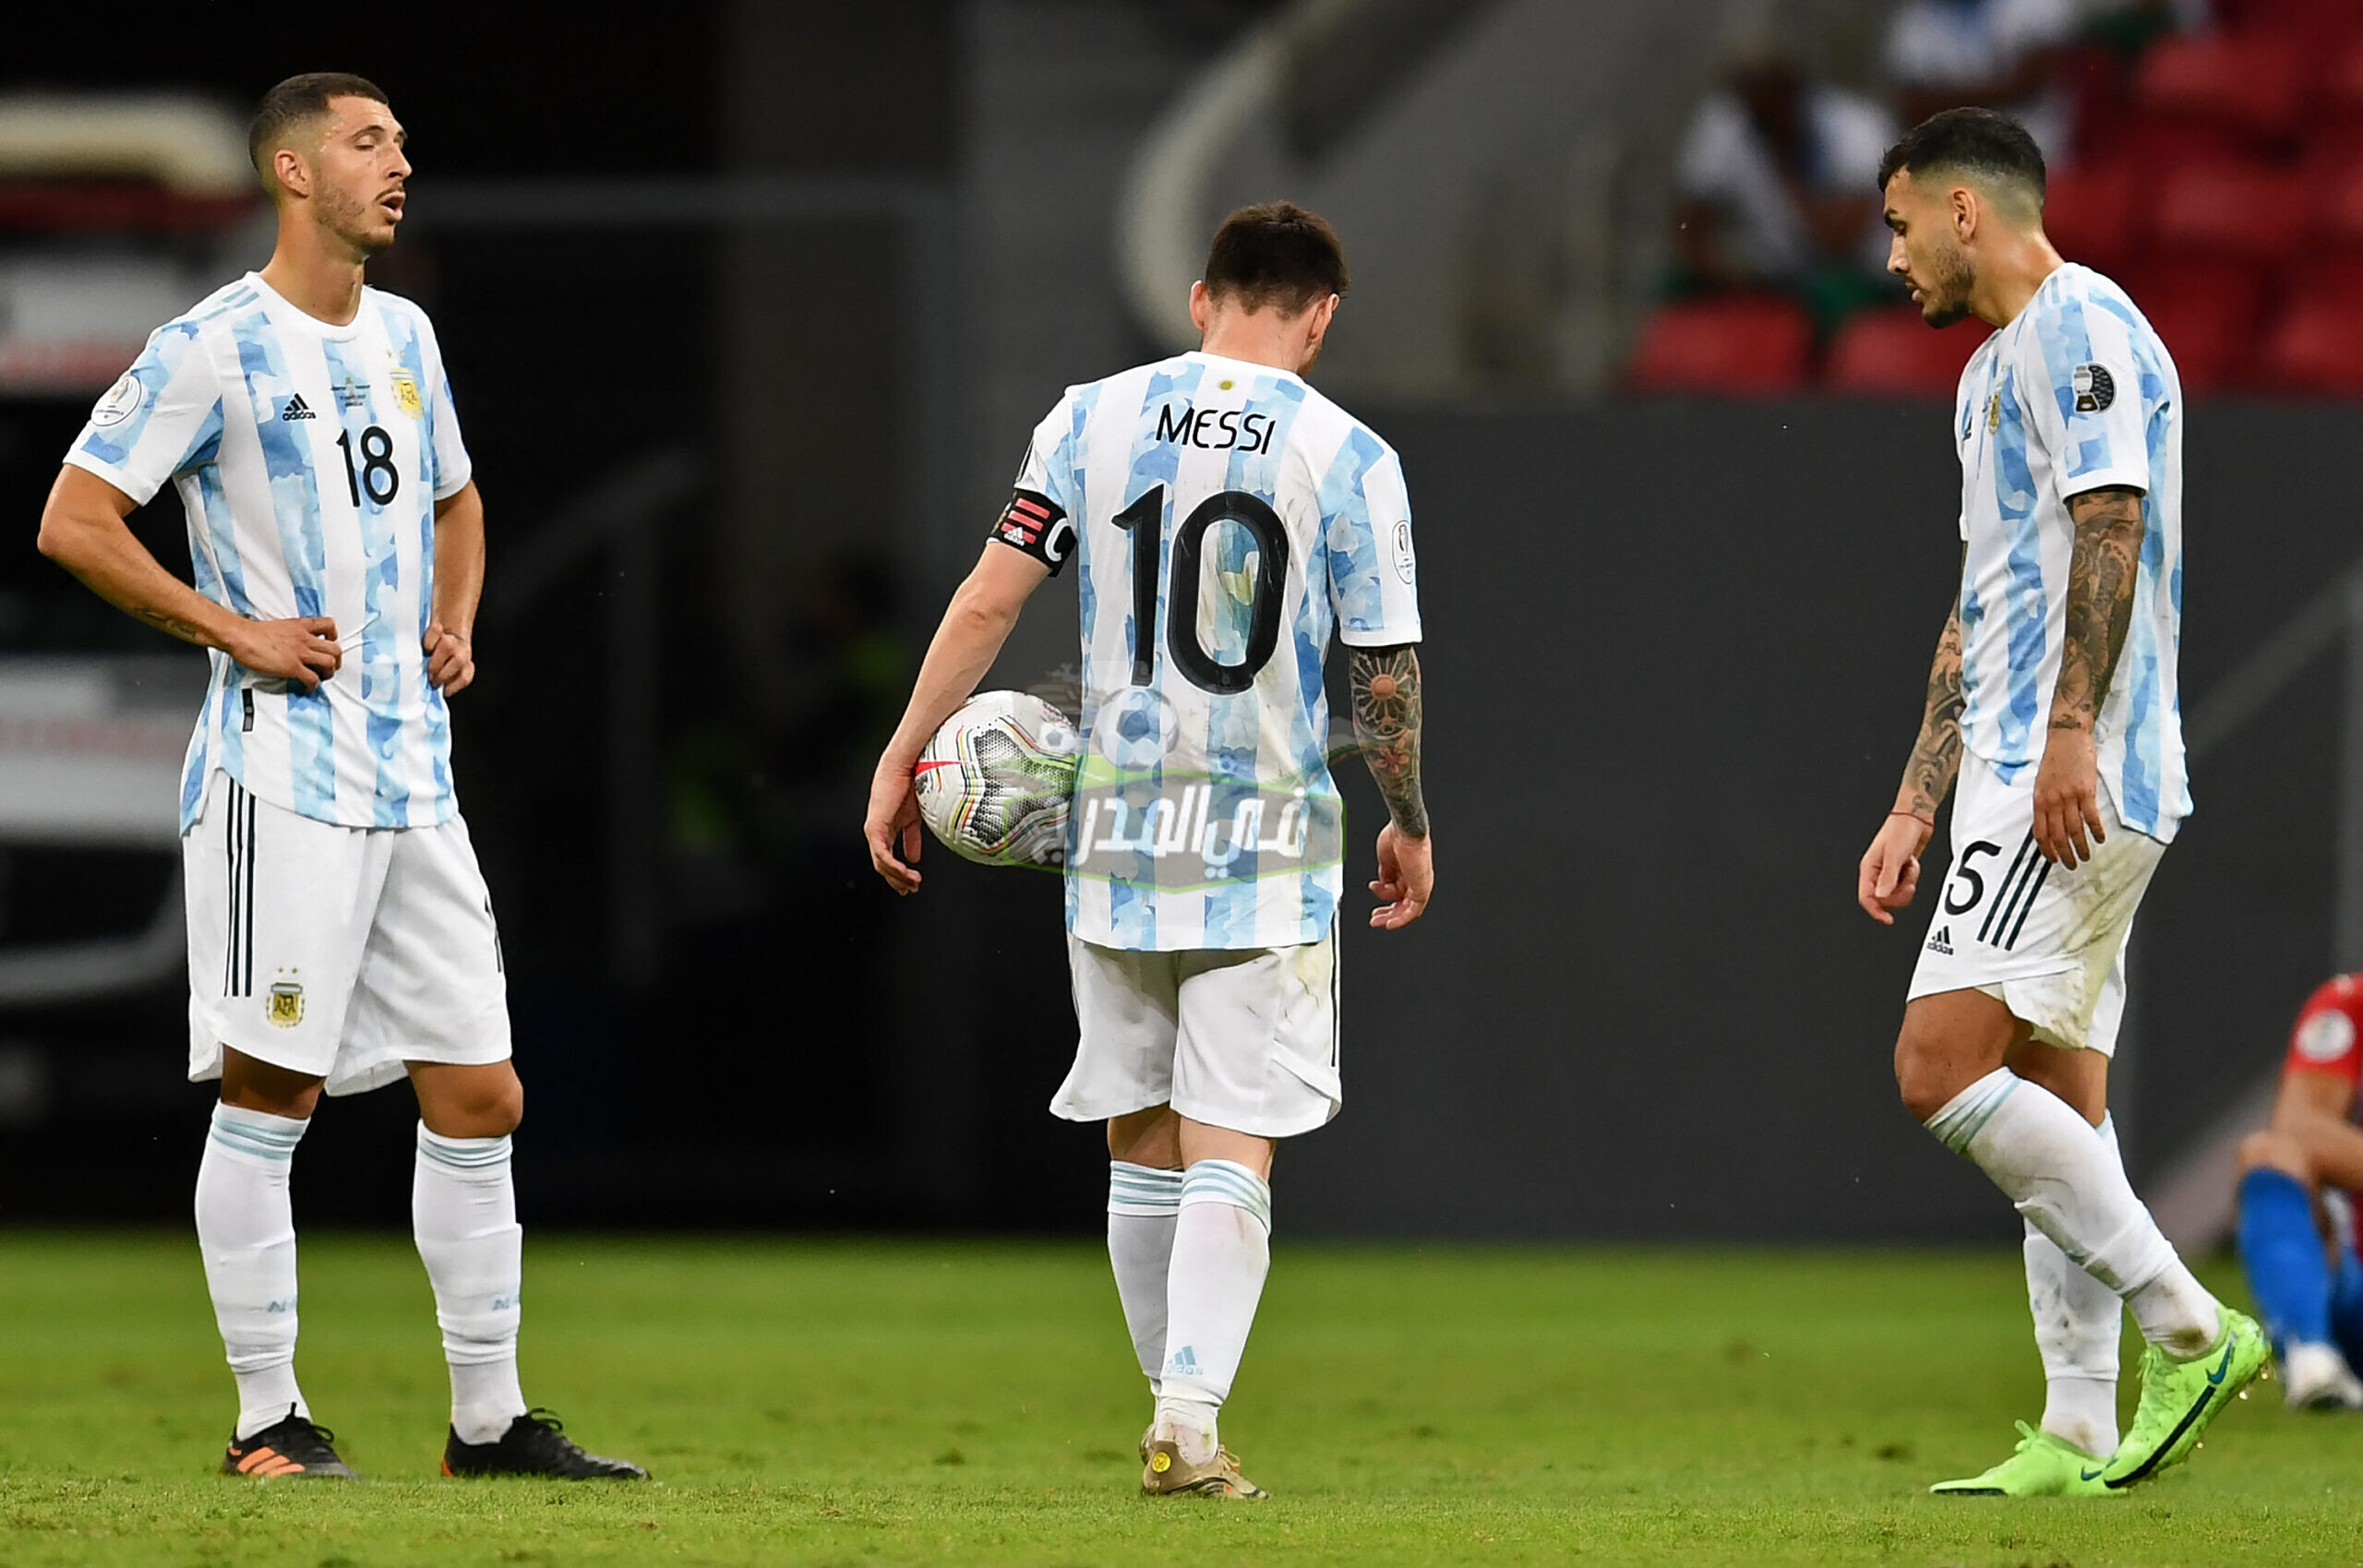 موعد مباراة الأرجنتين المقبلة في كوبا أمريكا 2021